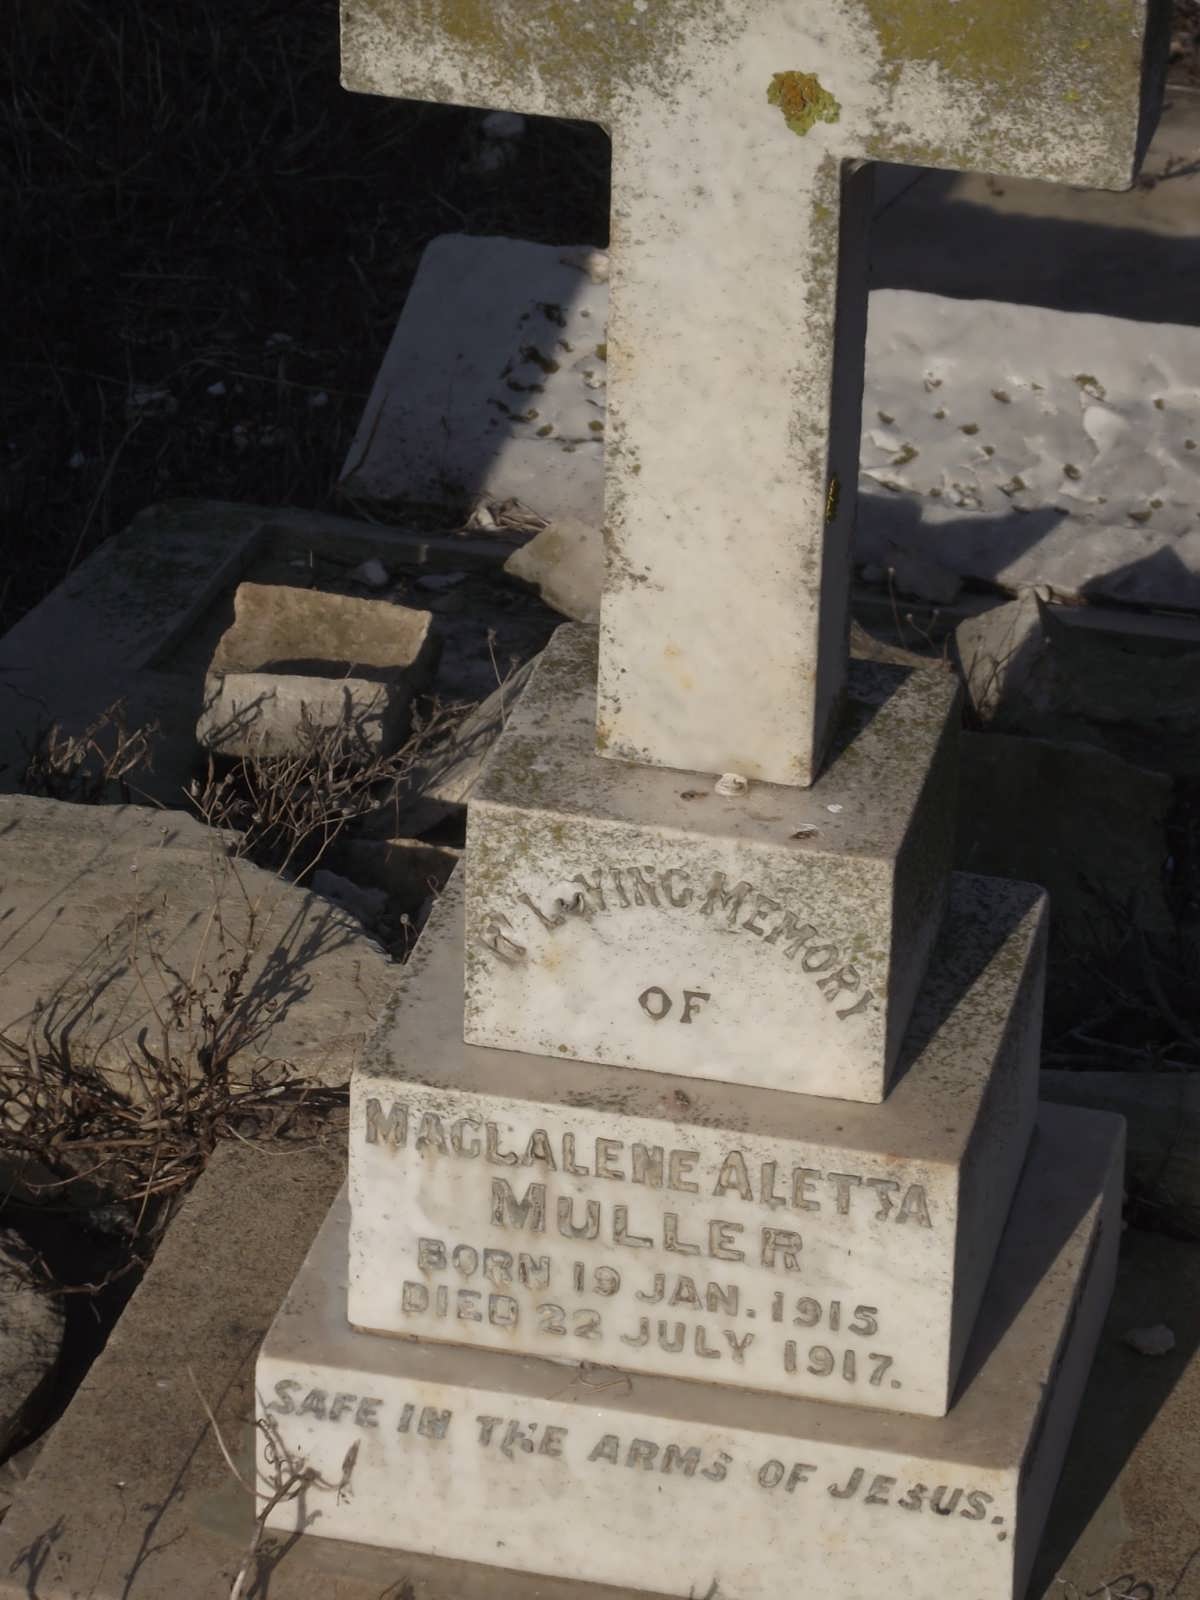 MULLER Magdalene Aletta 1915-1917